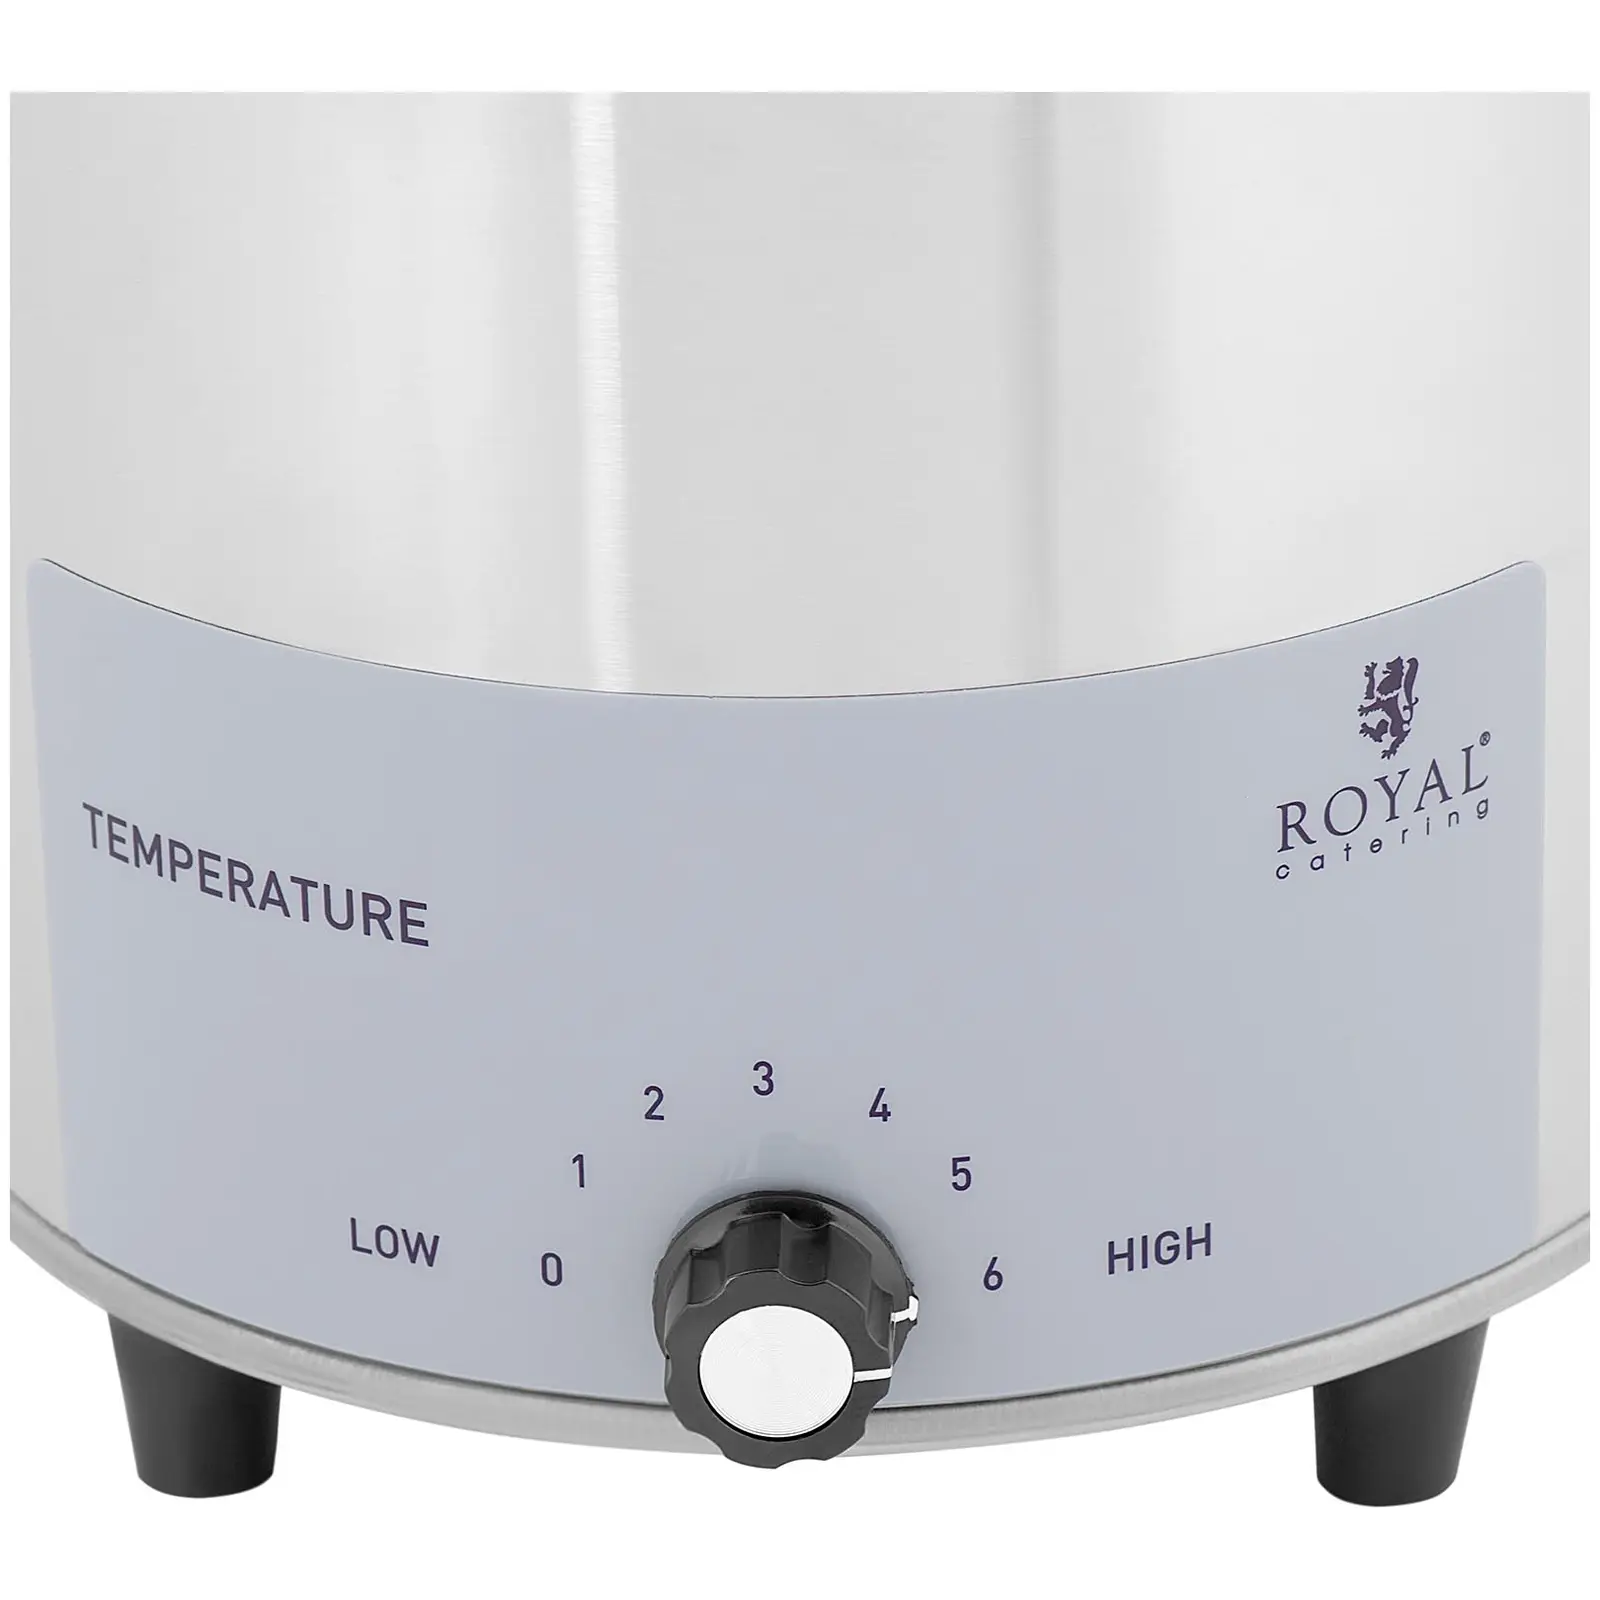 Dispenser per salse - Con funzione di riscaldamento - 4,5 / 3,3 l - Royal Catering